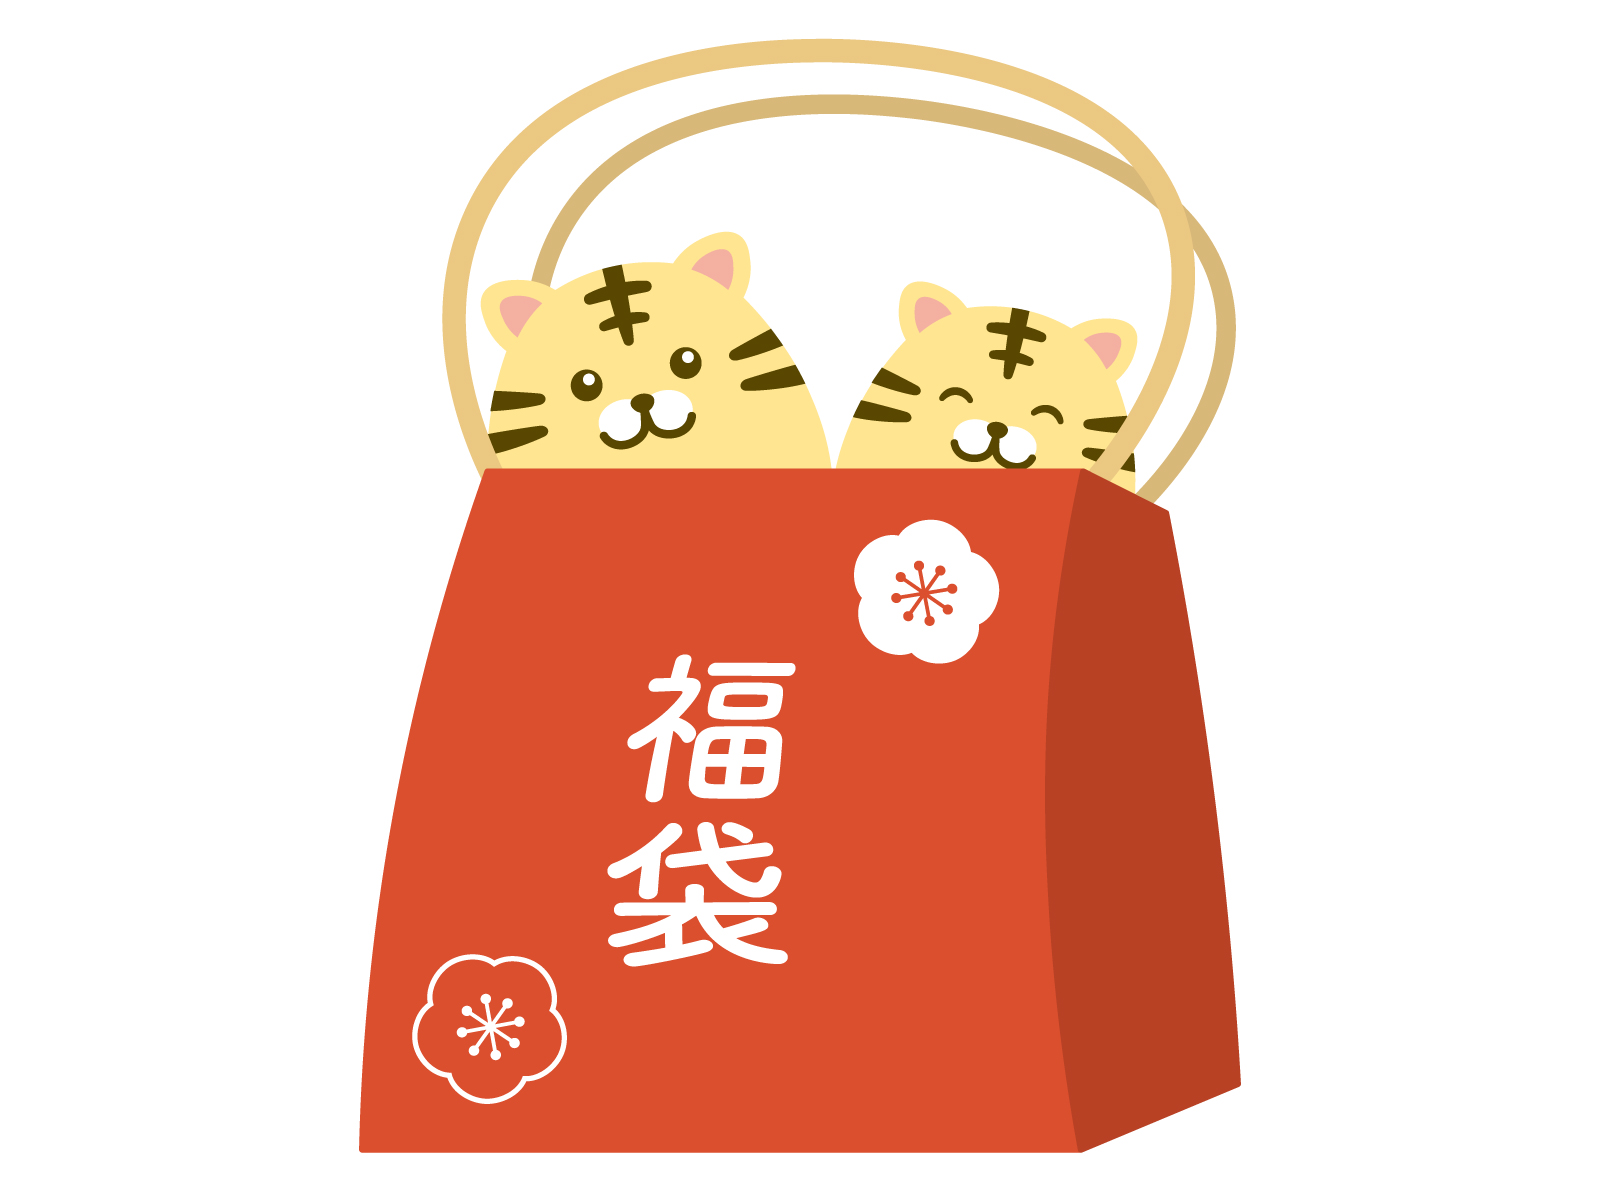 《12月29日〜31日》年末最後の運試しに参加しよう♪イオン近江八幡ショッピングセンターで「早得!福袋スクラッチキャンペーン」が開催！